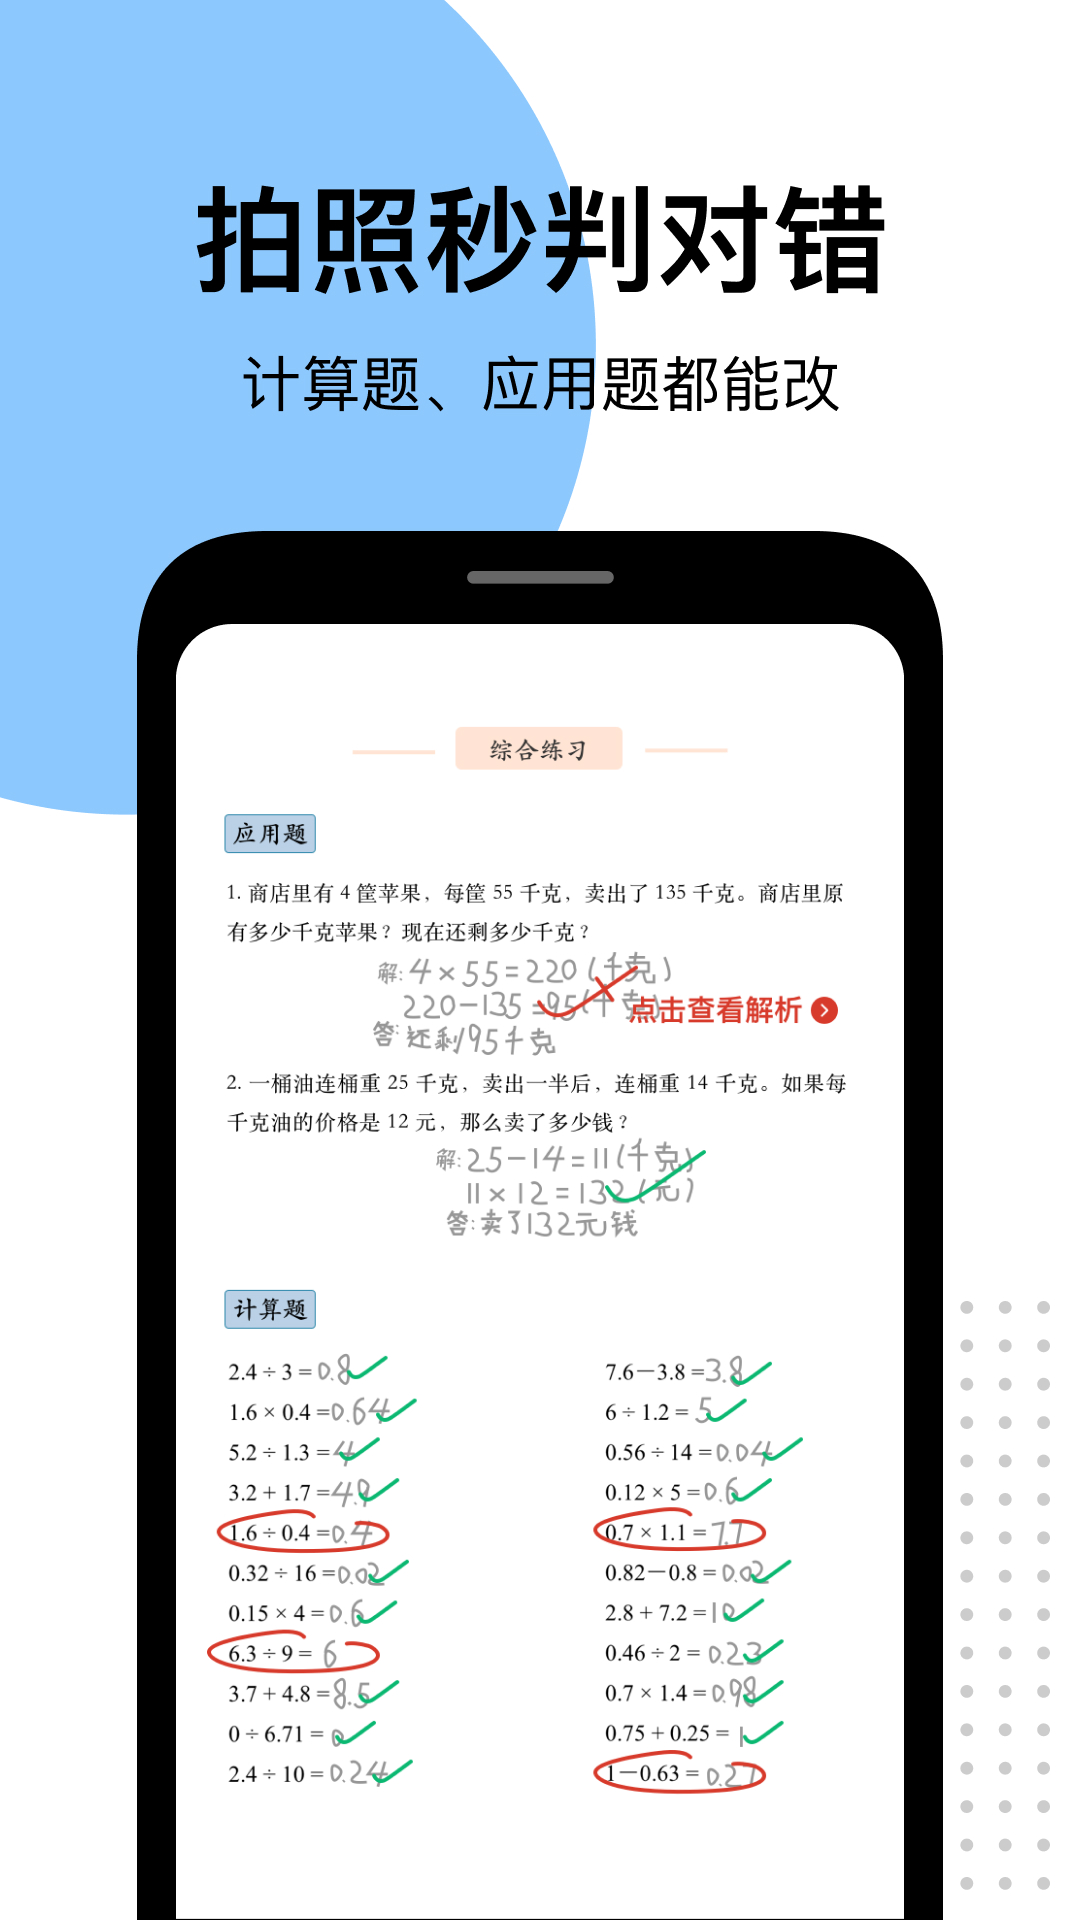 爱作业app快速批改作业 v4.20.5 截图5